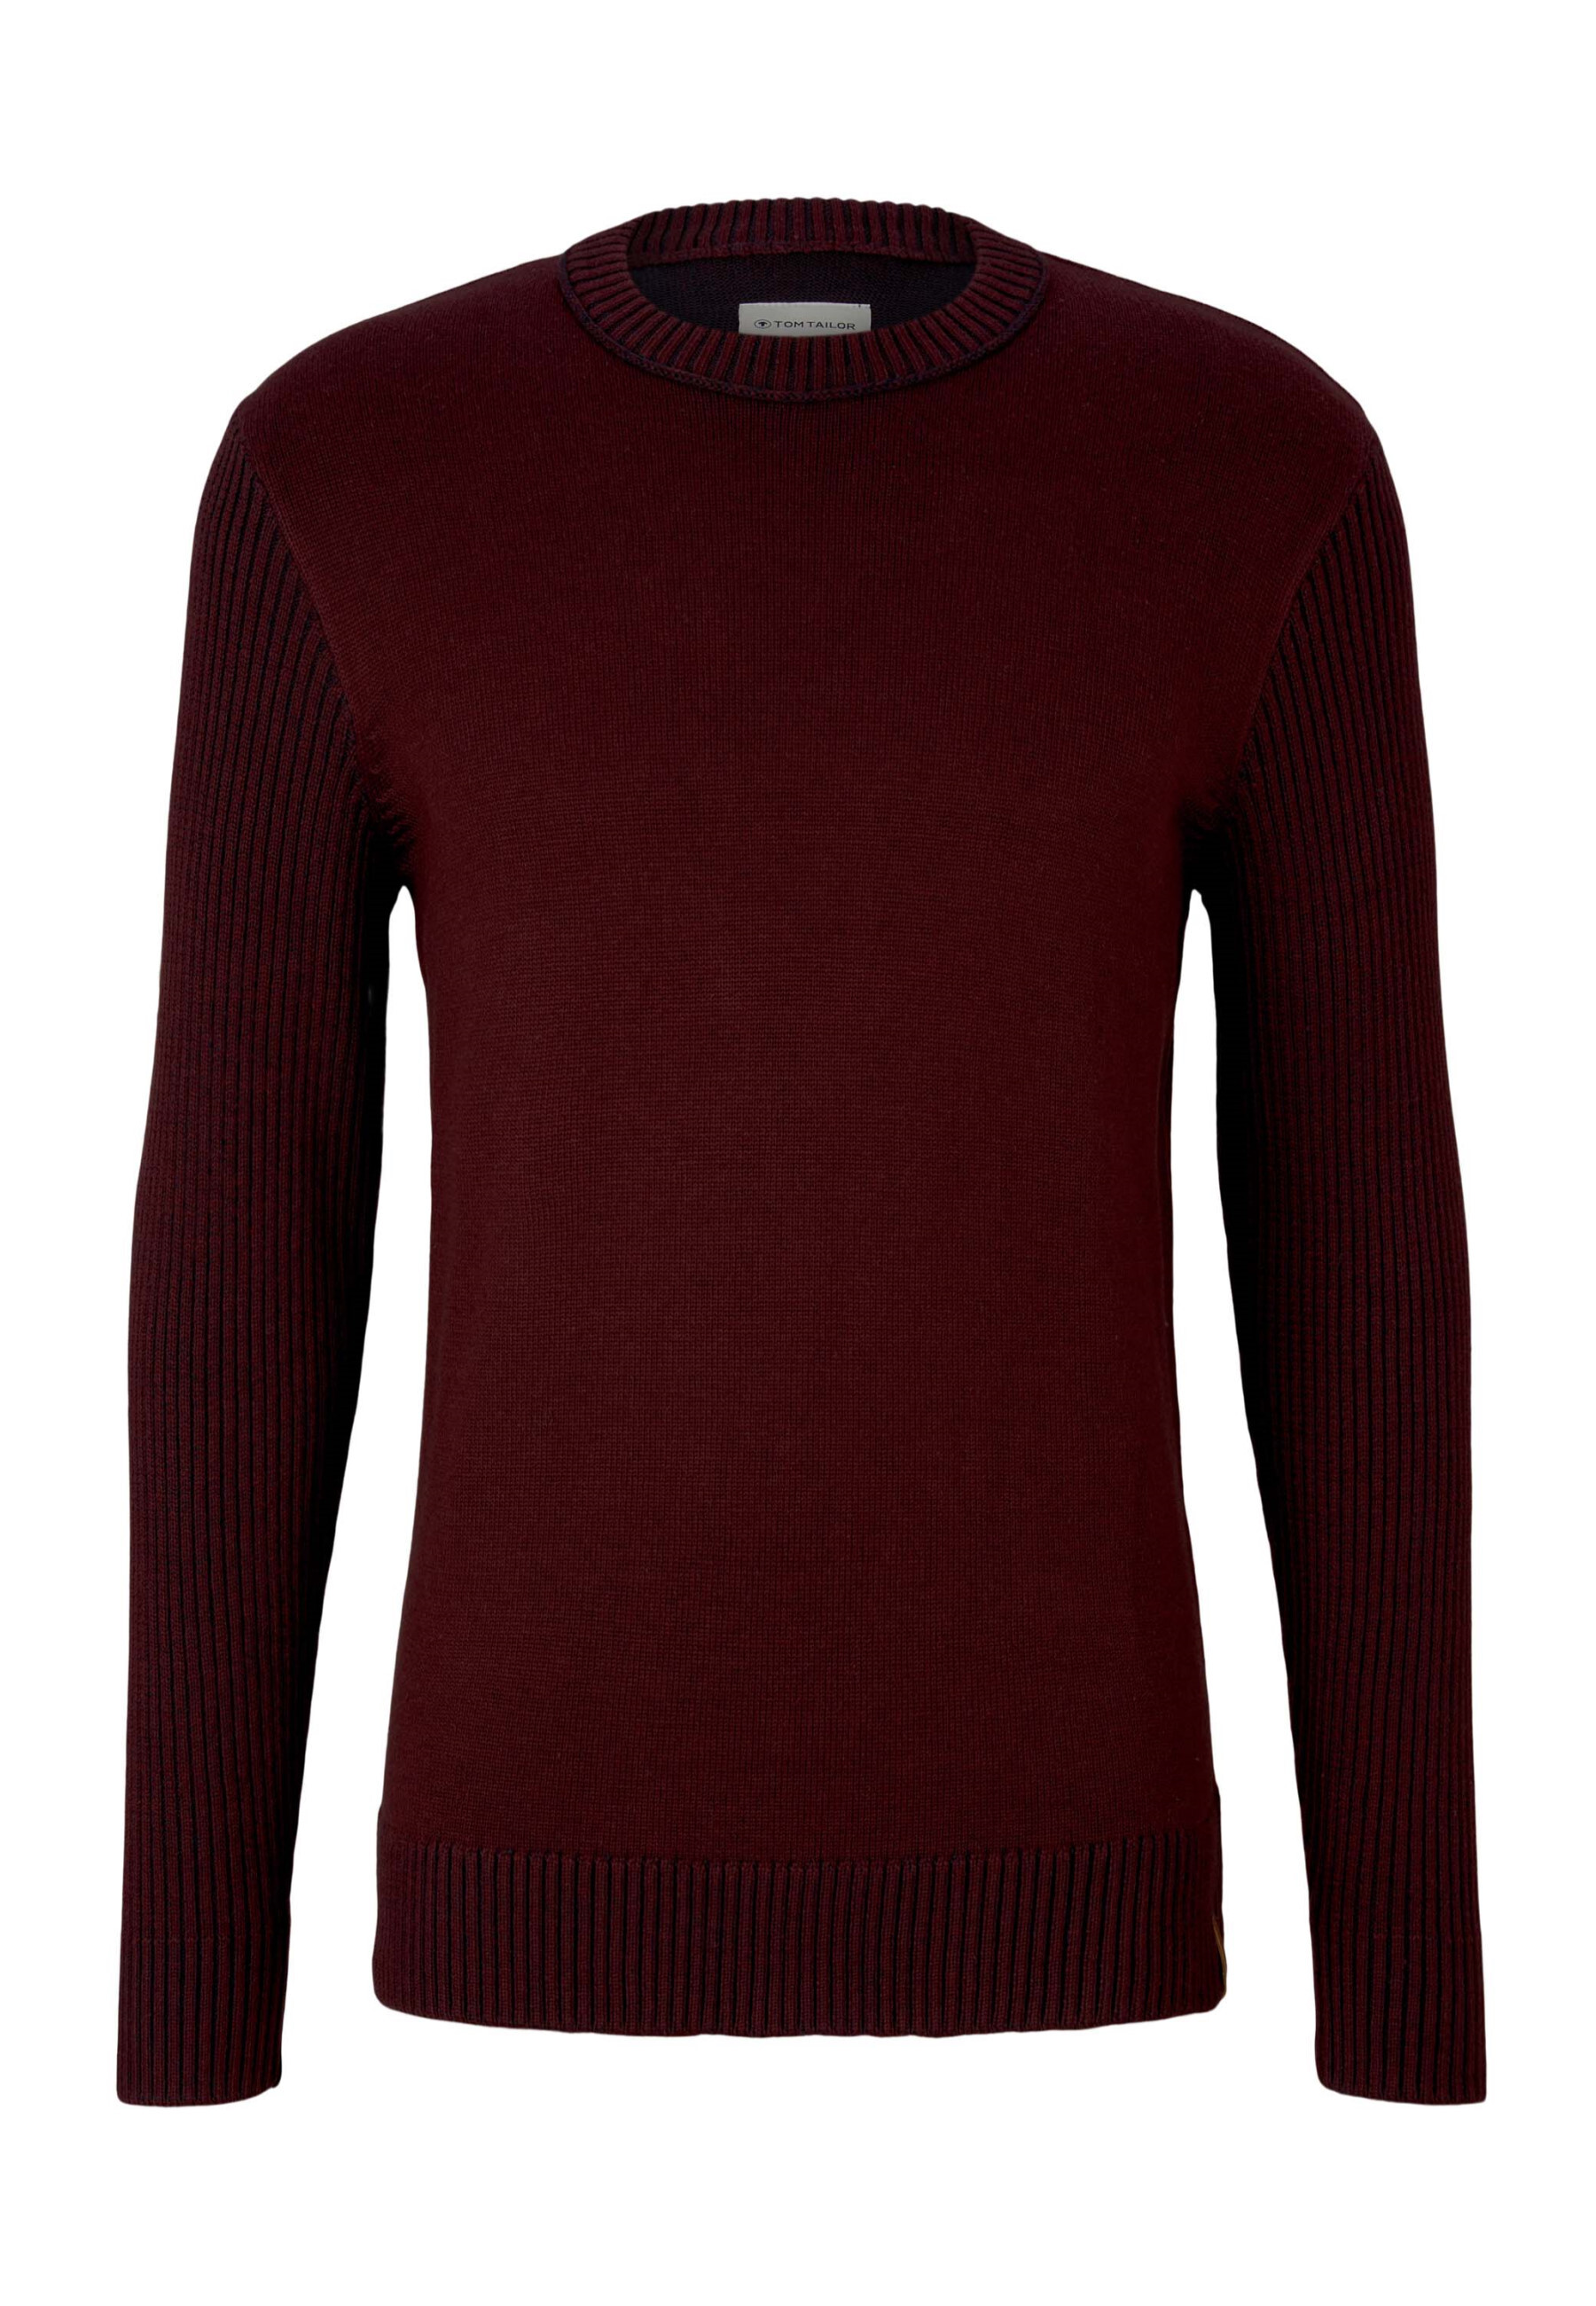 Пуловер Tom Tailor Strick, красный пуловер tom tailor размер s красный